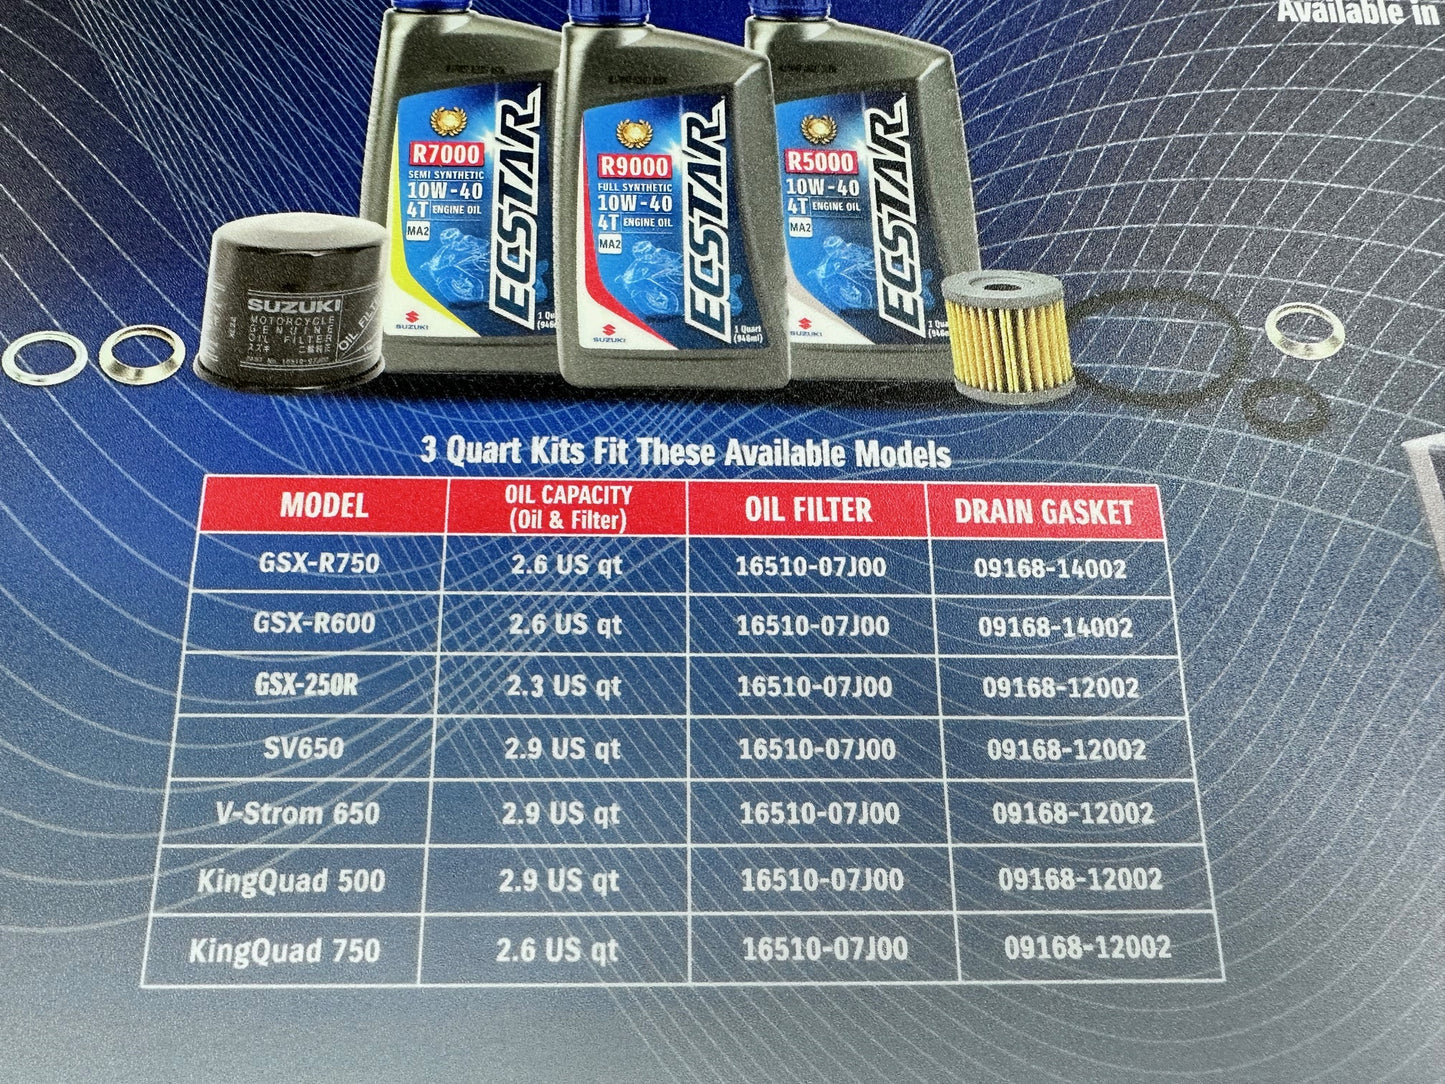 Suzuki ECSTAR R5000 Oil Change Kit 3 Quart 990A0-01E10-3KT